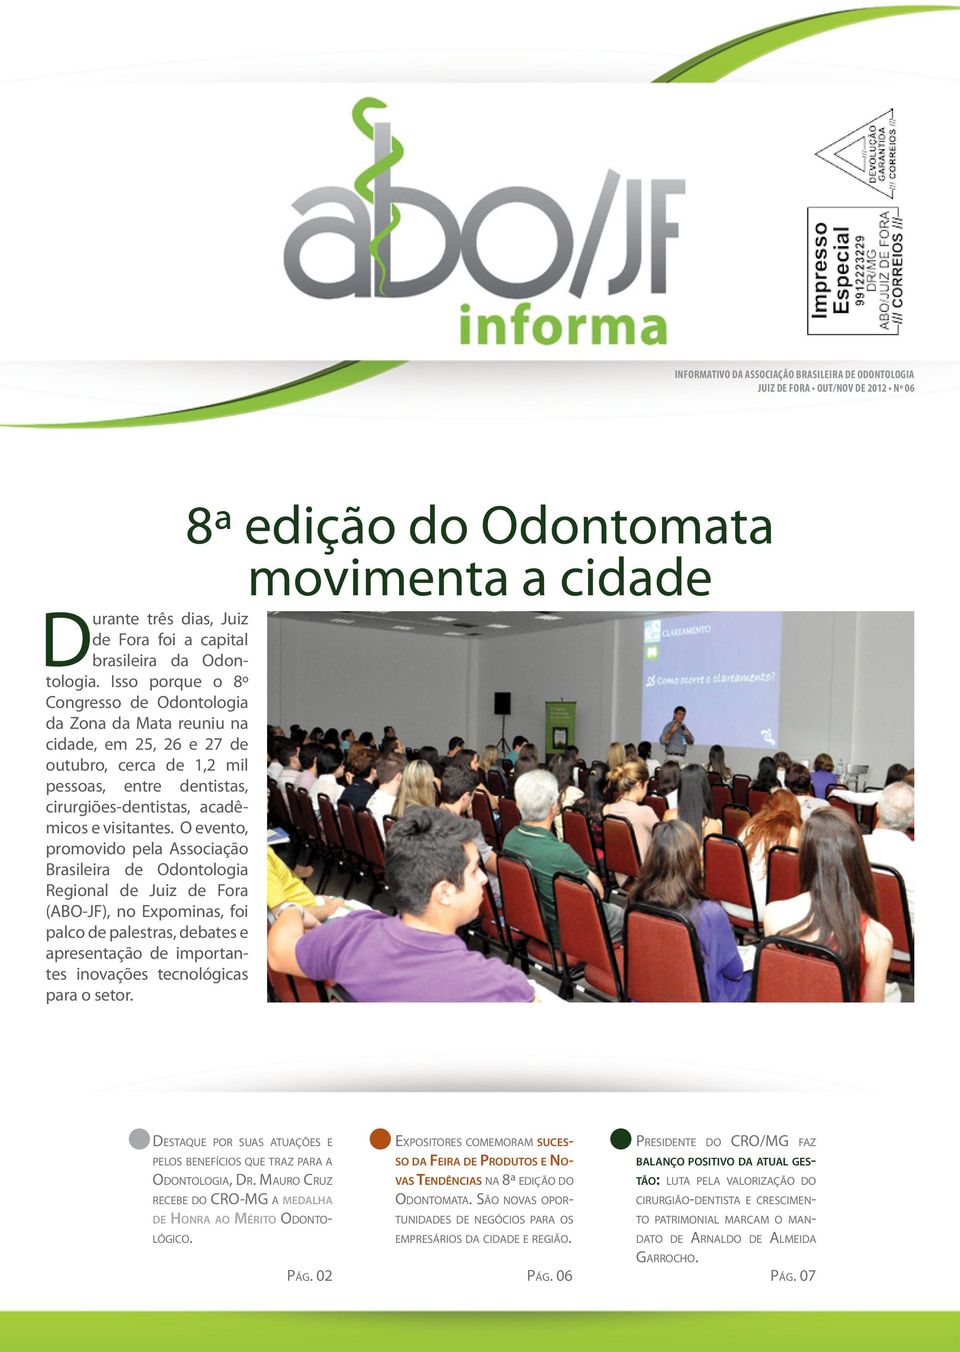 O evento, promovido pela Associação Brasileira de Odontologia Regional de Juiz de Fora (ABO-JF), no Expominas, foi palco de palestras, debates e apresentação de importantes inovações tecnológicas